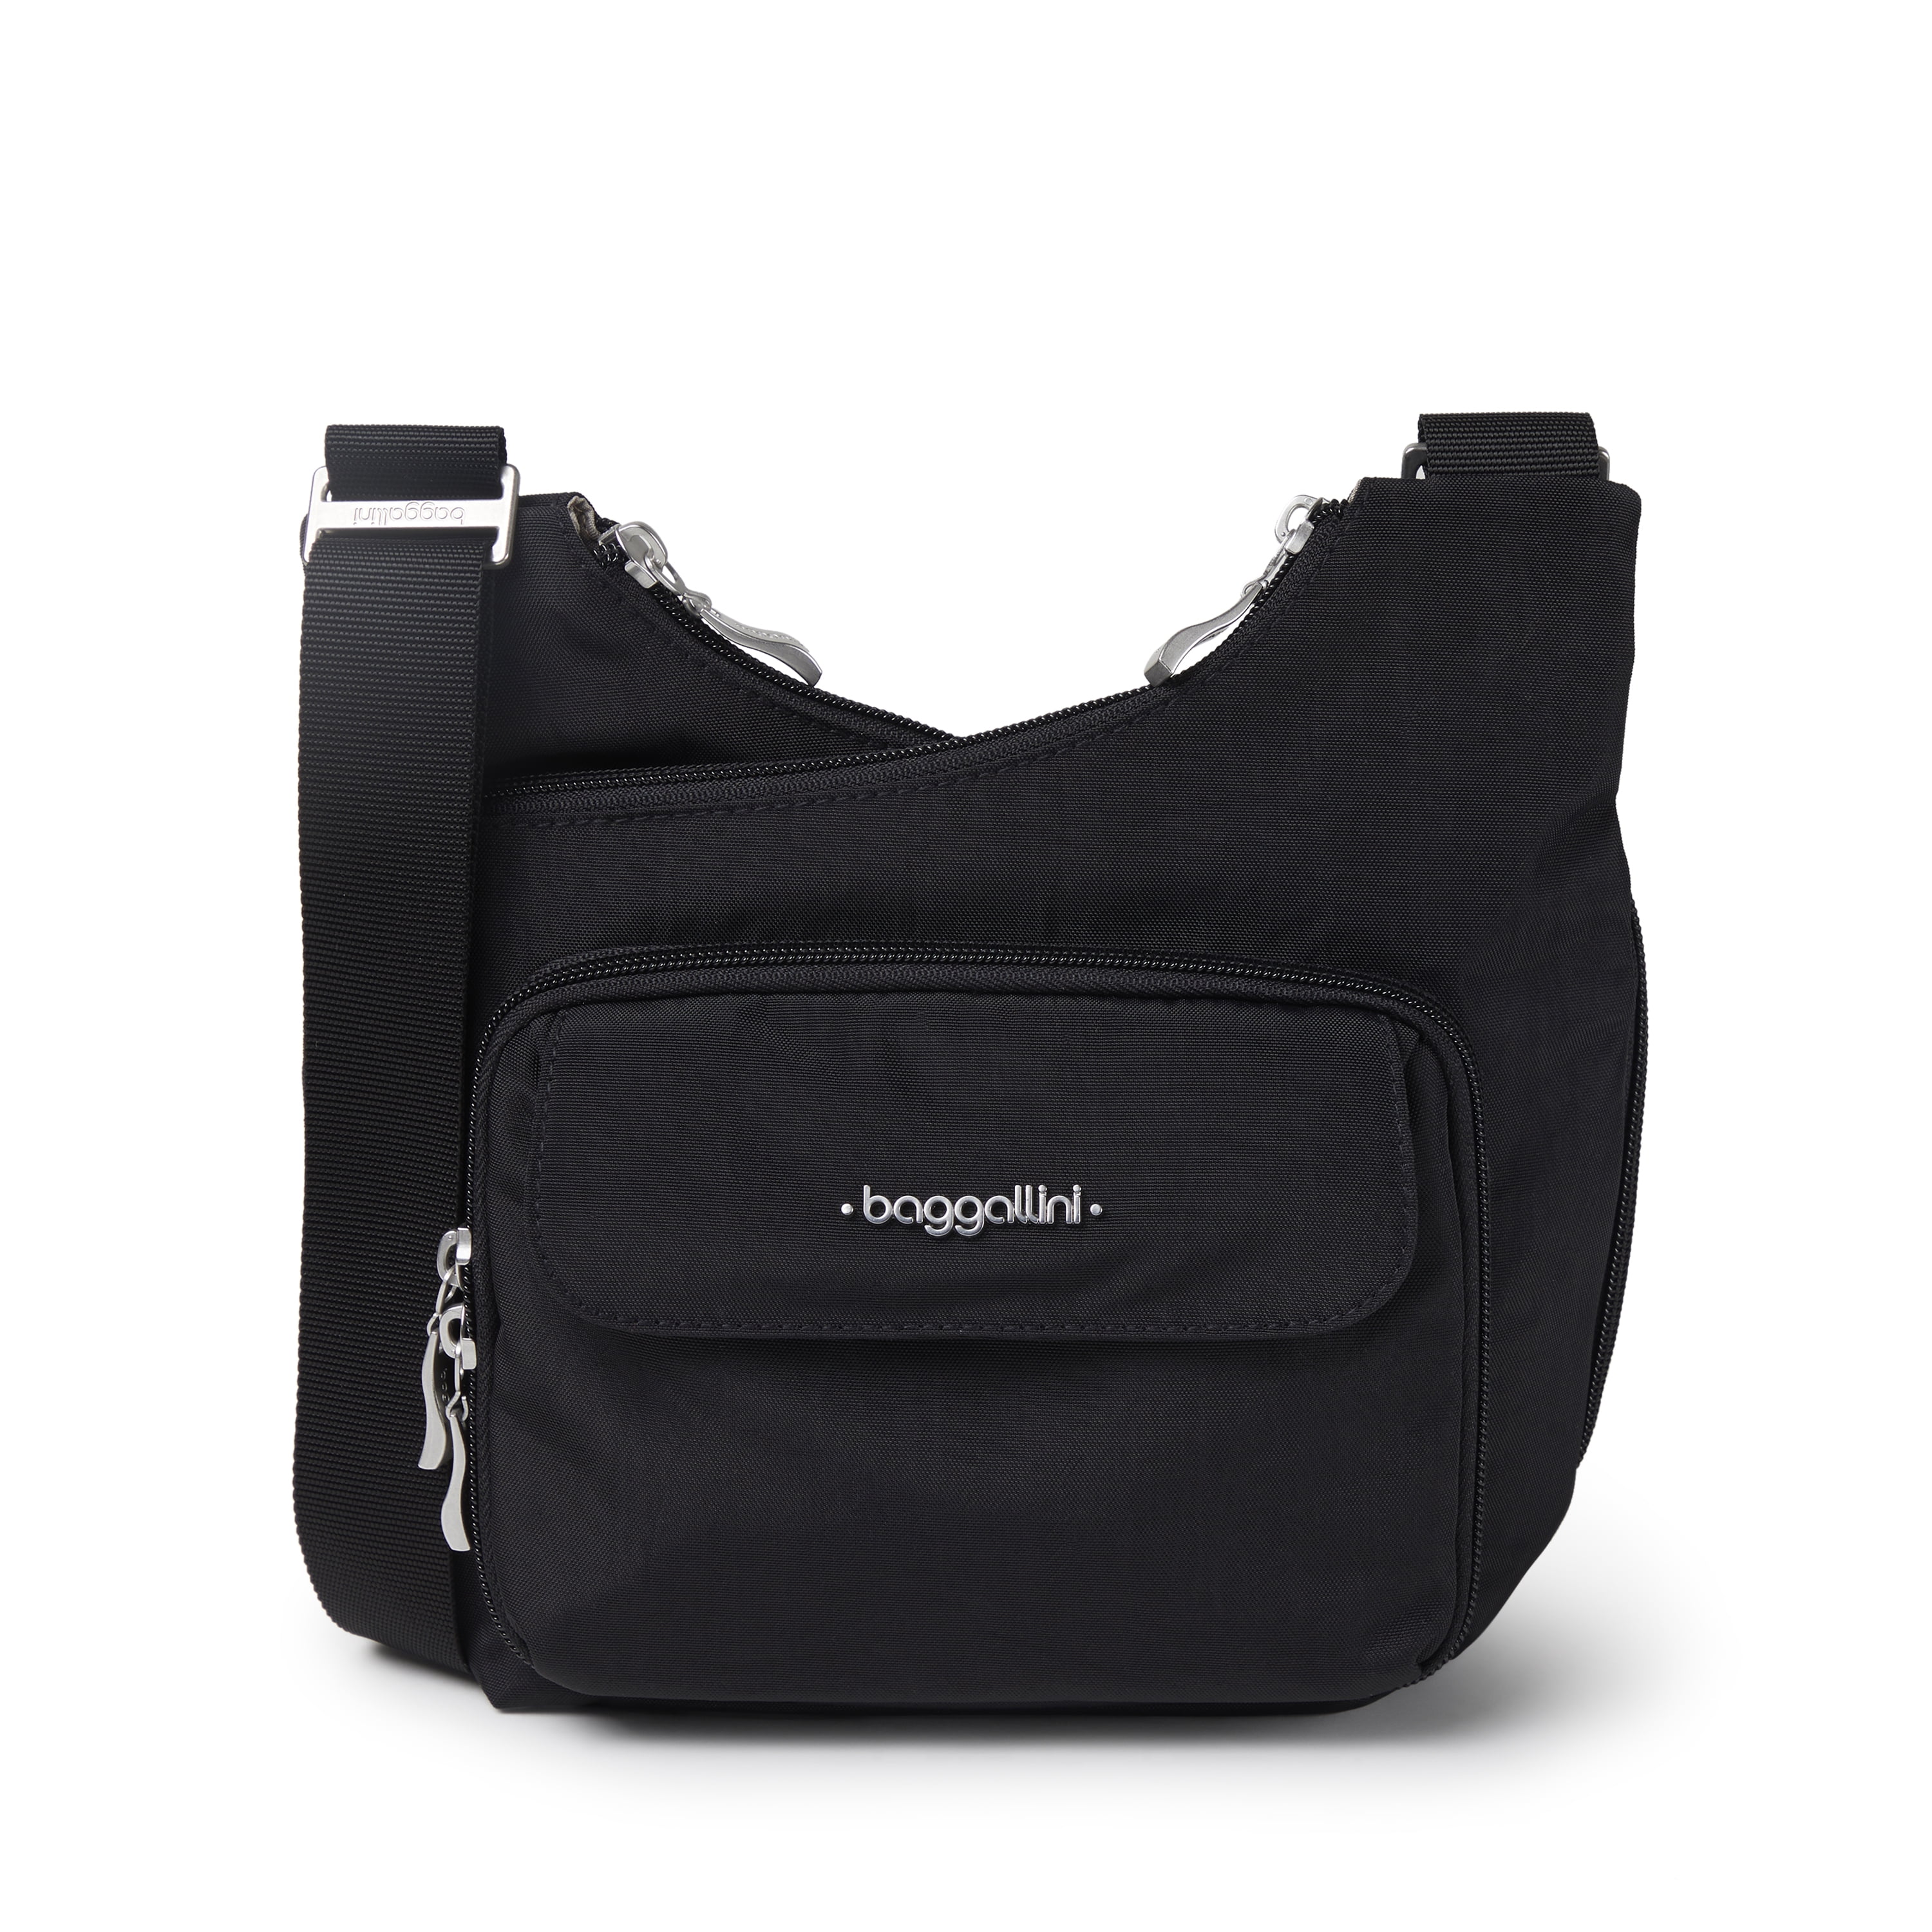 Baggallini Legacy Triple Zip Bagg  Cross body handbags, Baggallini, Red crossbody  bag